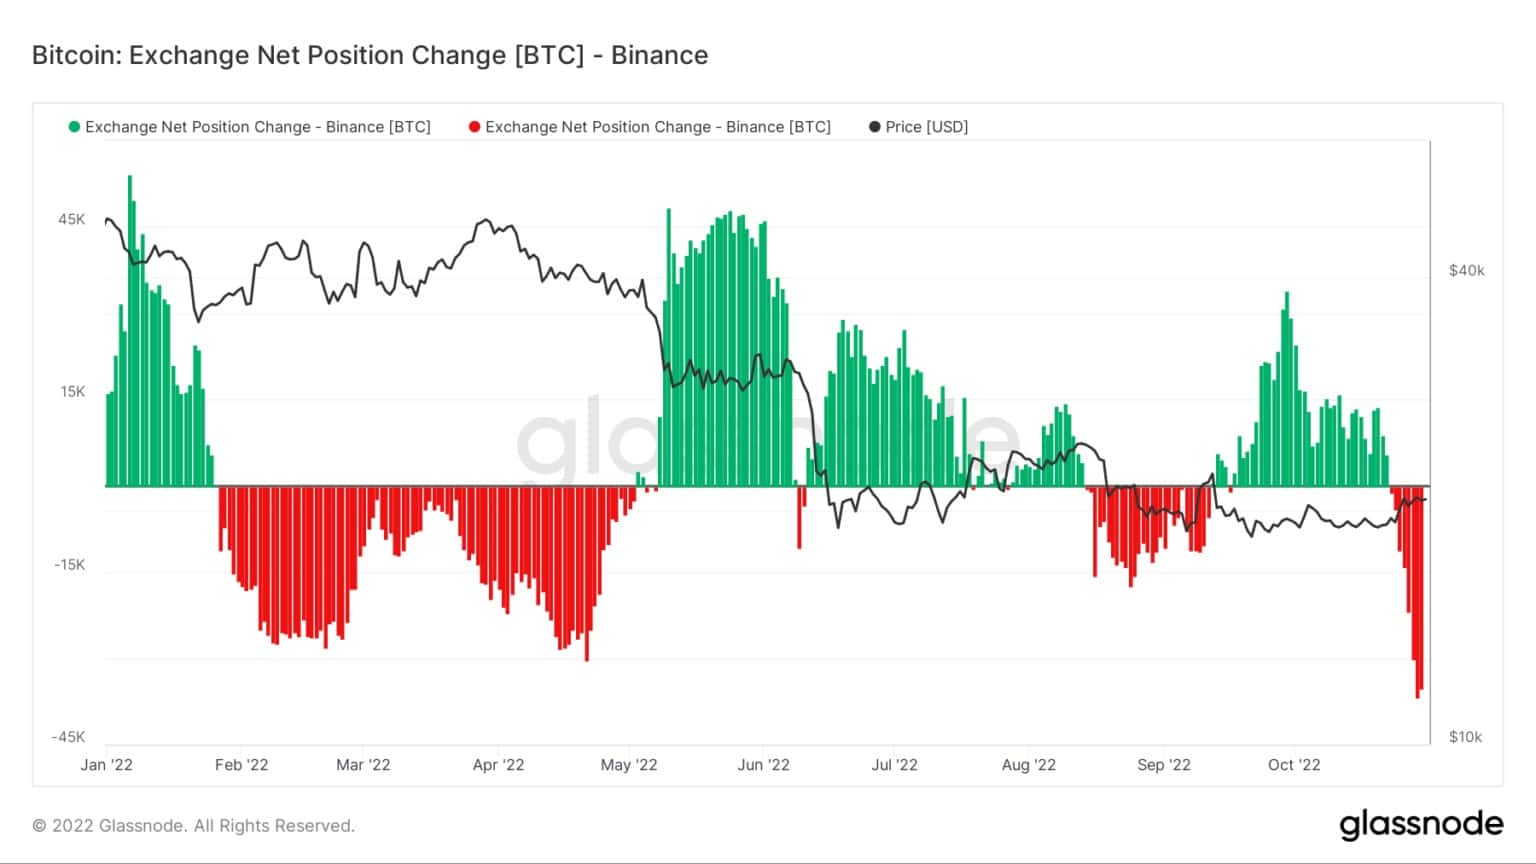 Čistá pozice na burze Bitcoin v BinanceČistá pozice na burze Bitcoin v Binance